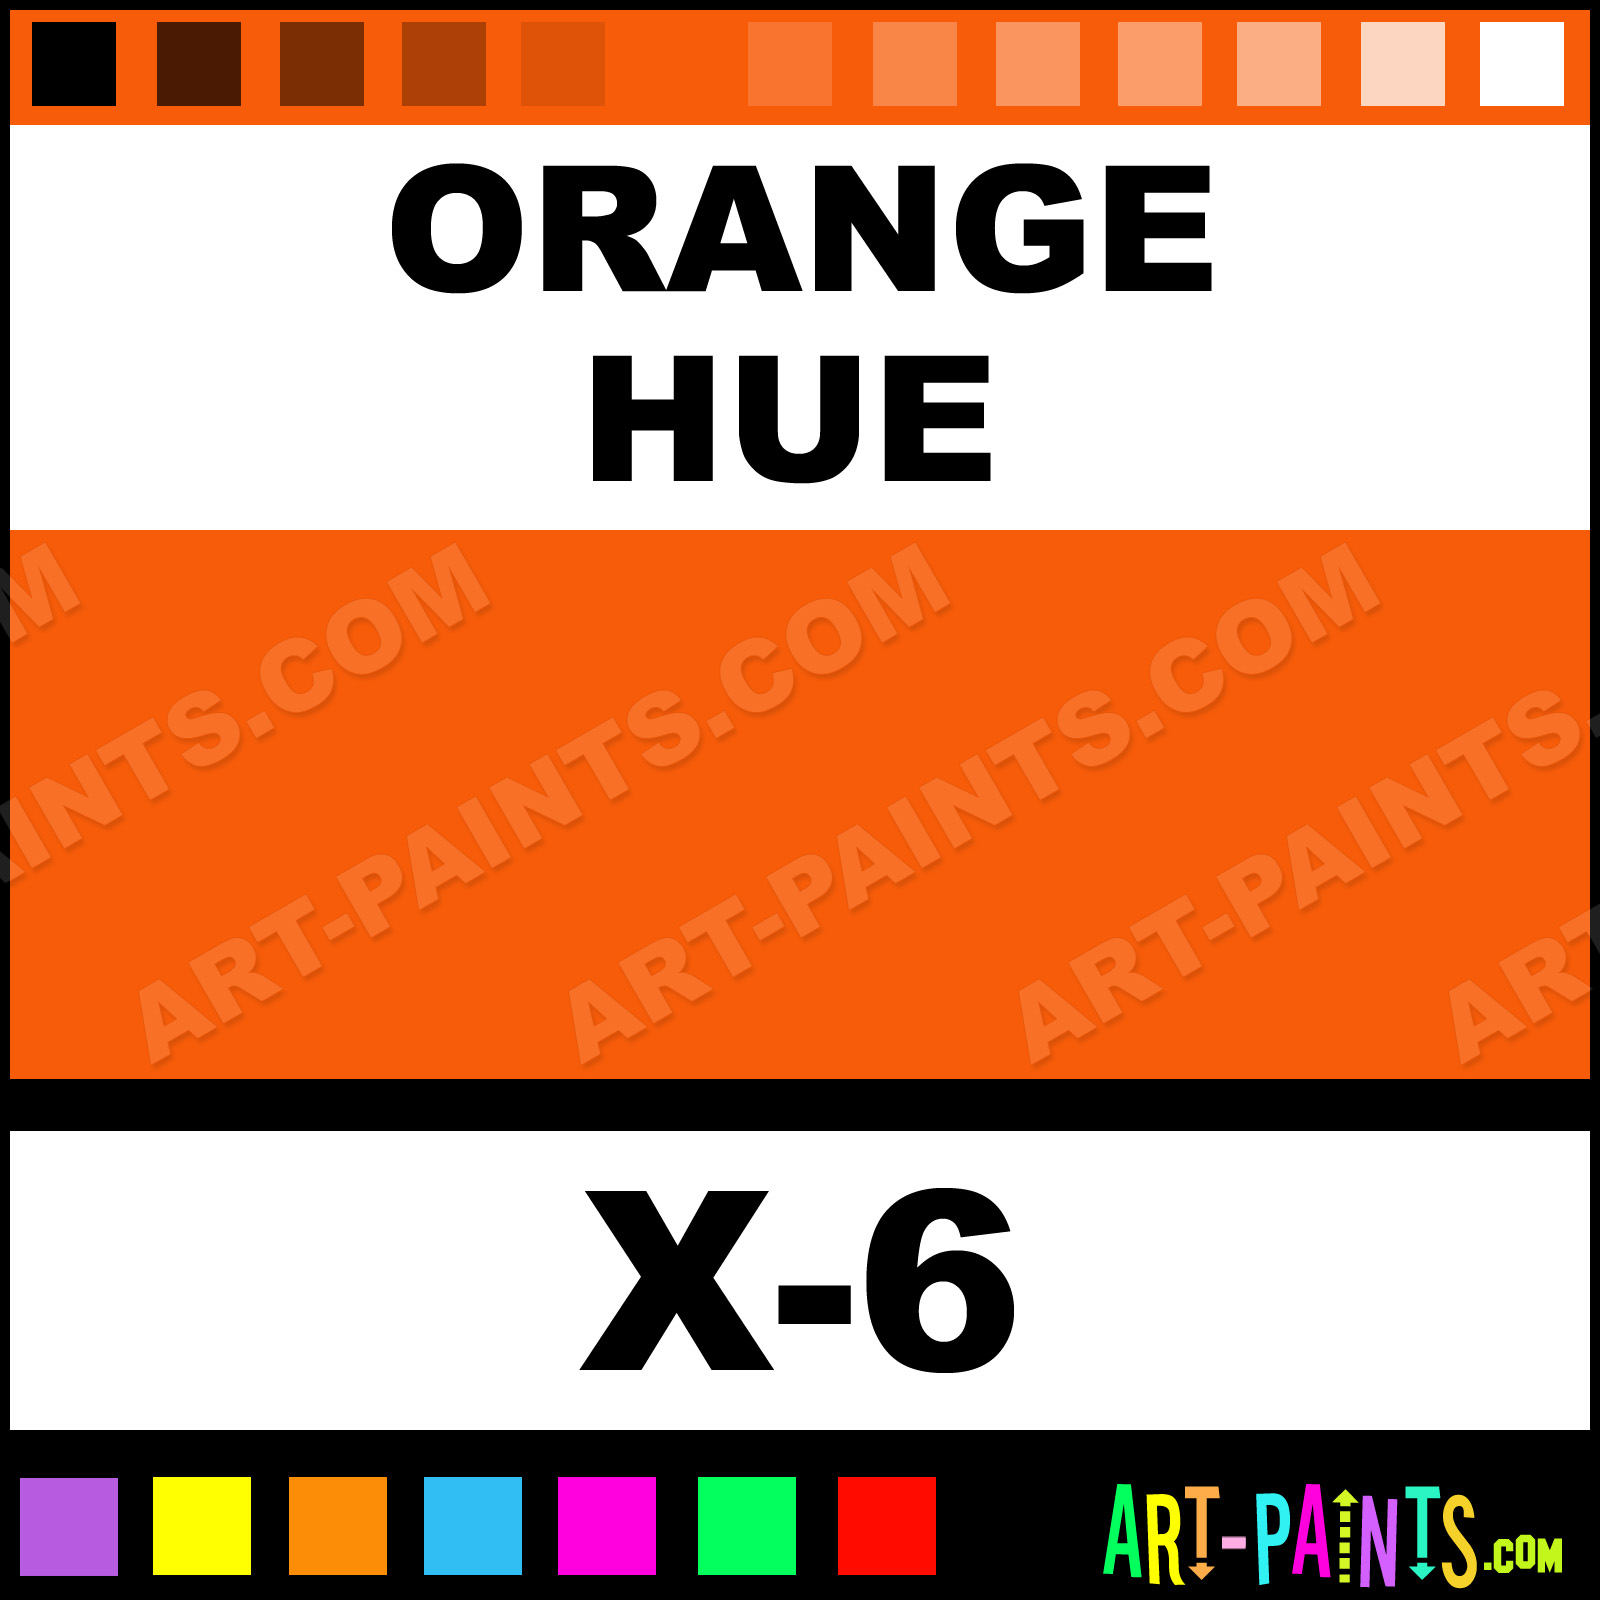 Chrome Orange Acrylic Paint